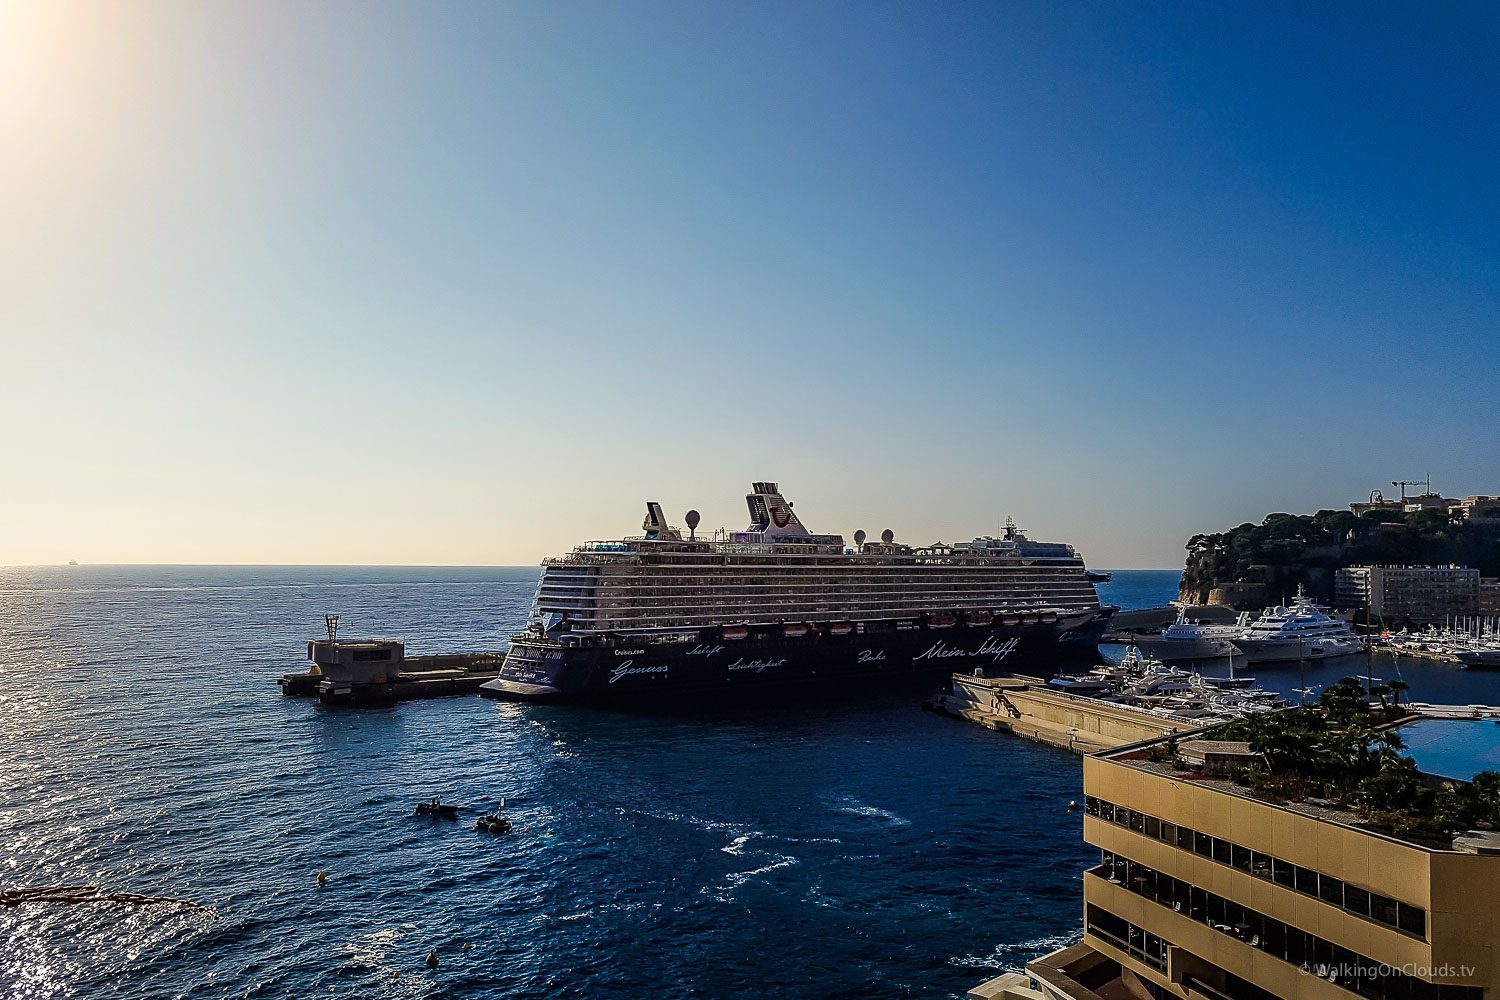 Monaco und Monte Carlo auf einer Kreuzfahrt als Kreuzfahrtblogger erleben! Das bekannte Casino, der Tunnel aus der Formel 1, der Blick auf das Mittelmeer und die TUI Mein Schiff 5 - welche Ausflüge gibt es?